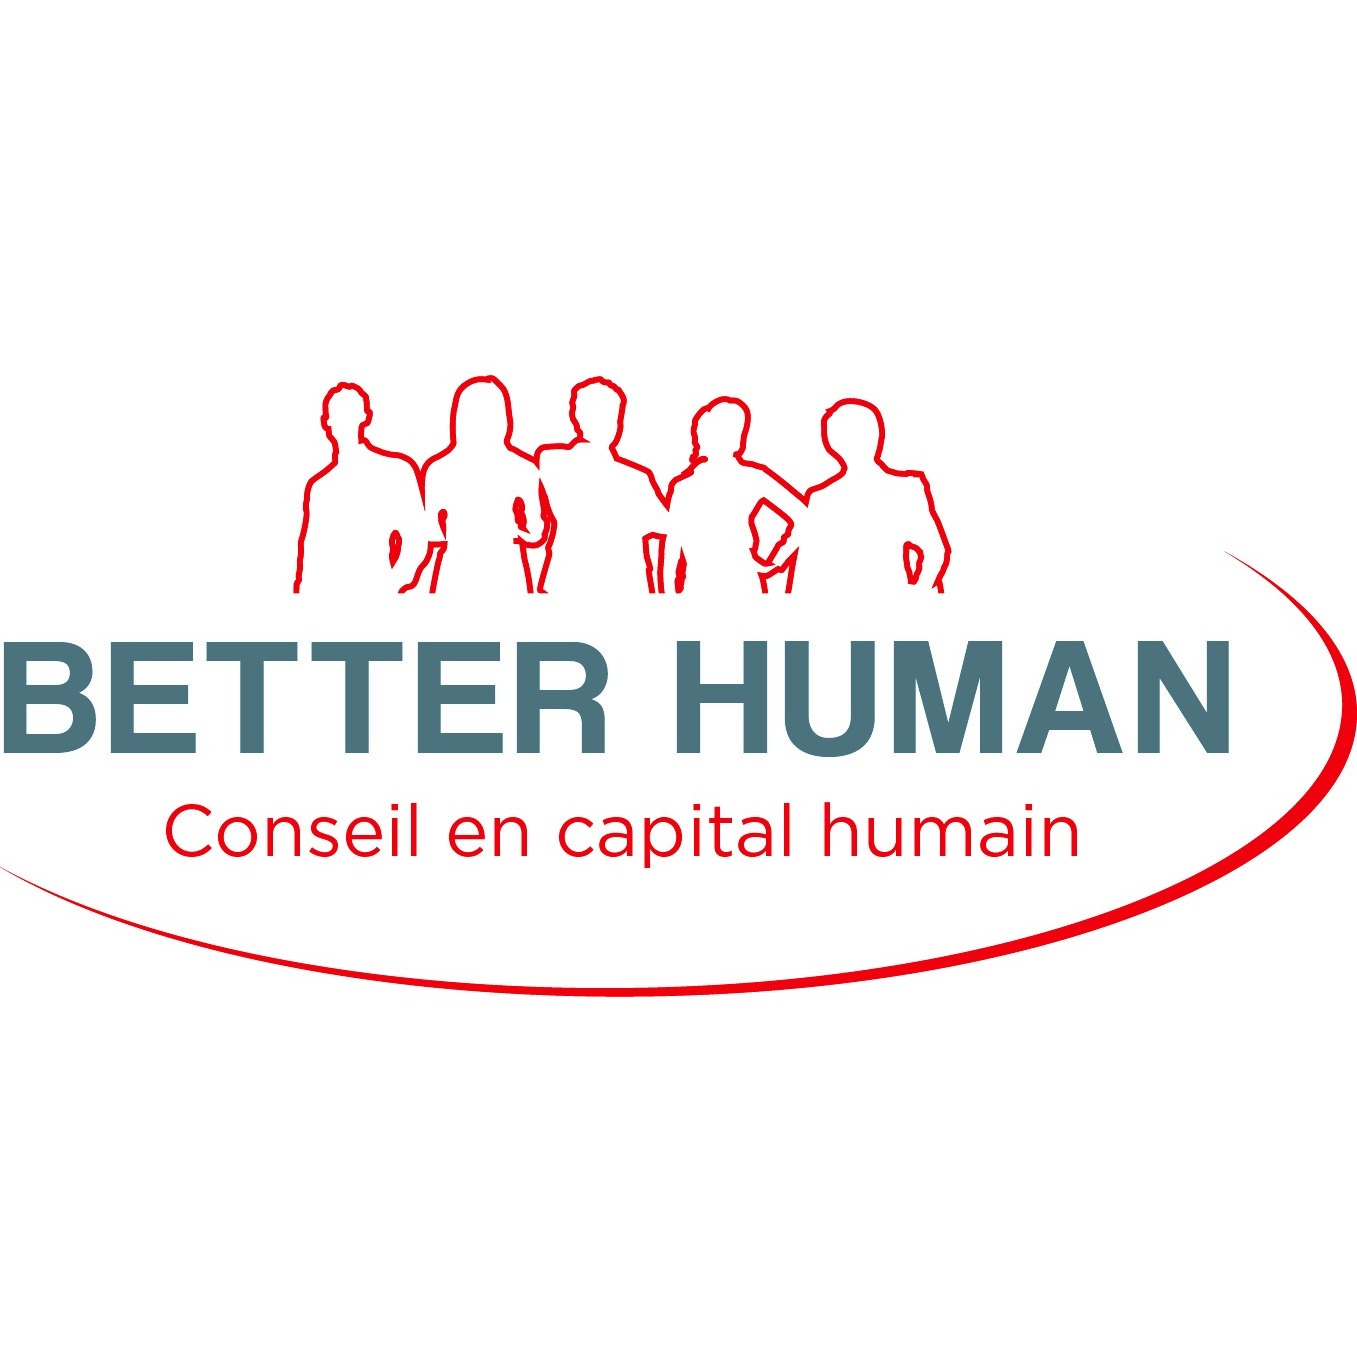 Better Human